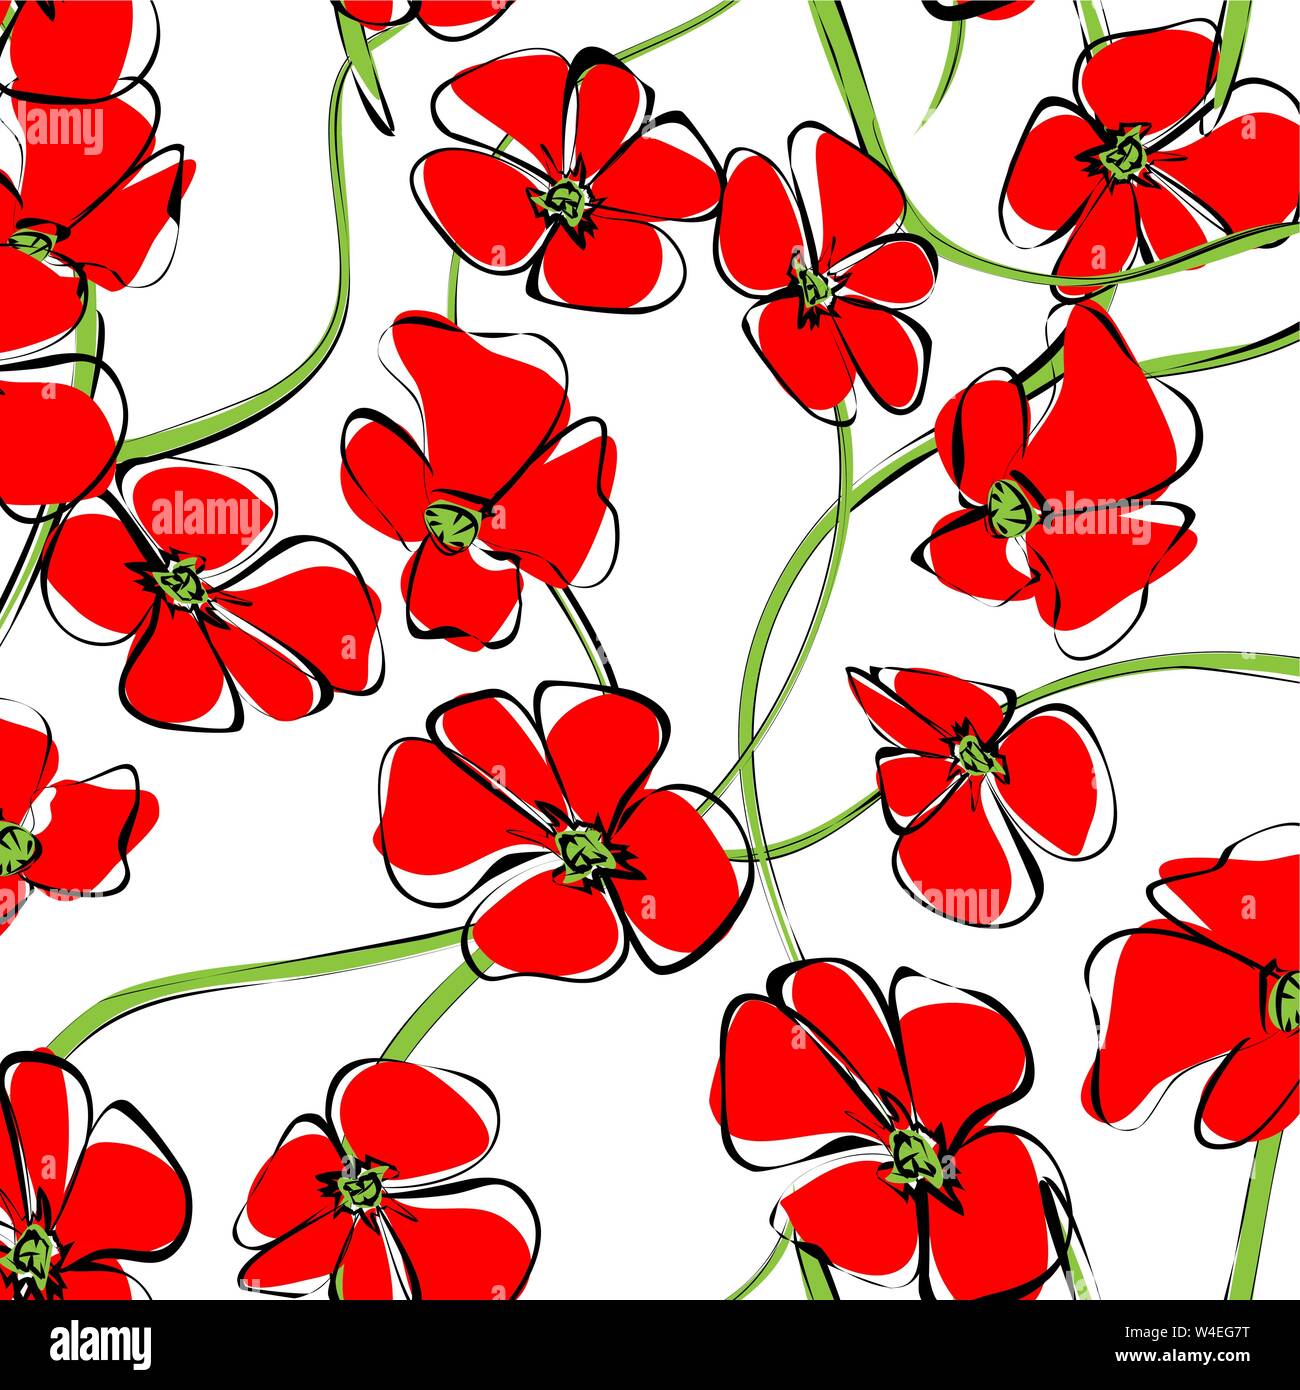 Fiore di primavera configurazione del campo di background. Fiori di colore rosso di fioritura del papavero selvatico con stelo verde foglia, fiori e bocciolo. Motivo floreale per la carta da parati, tessile Illustrazione Vettoriale